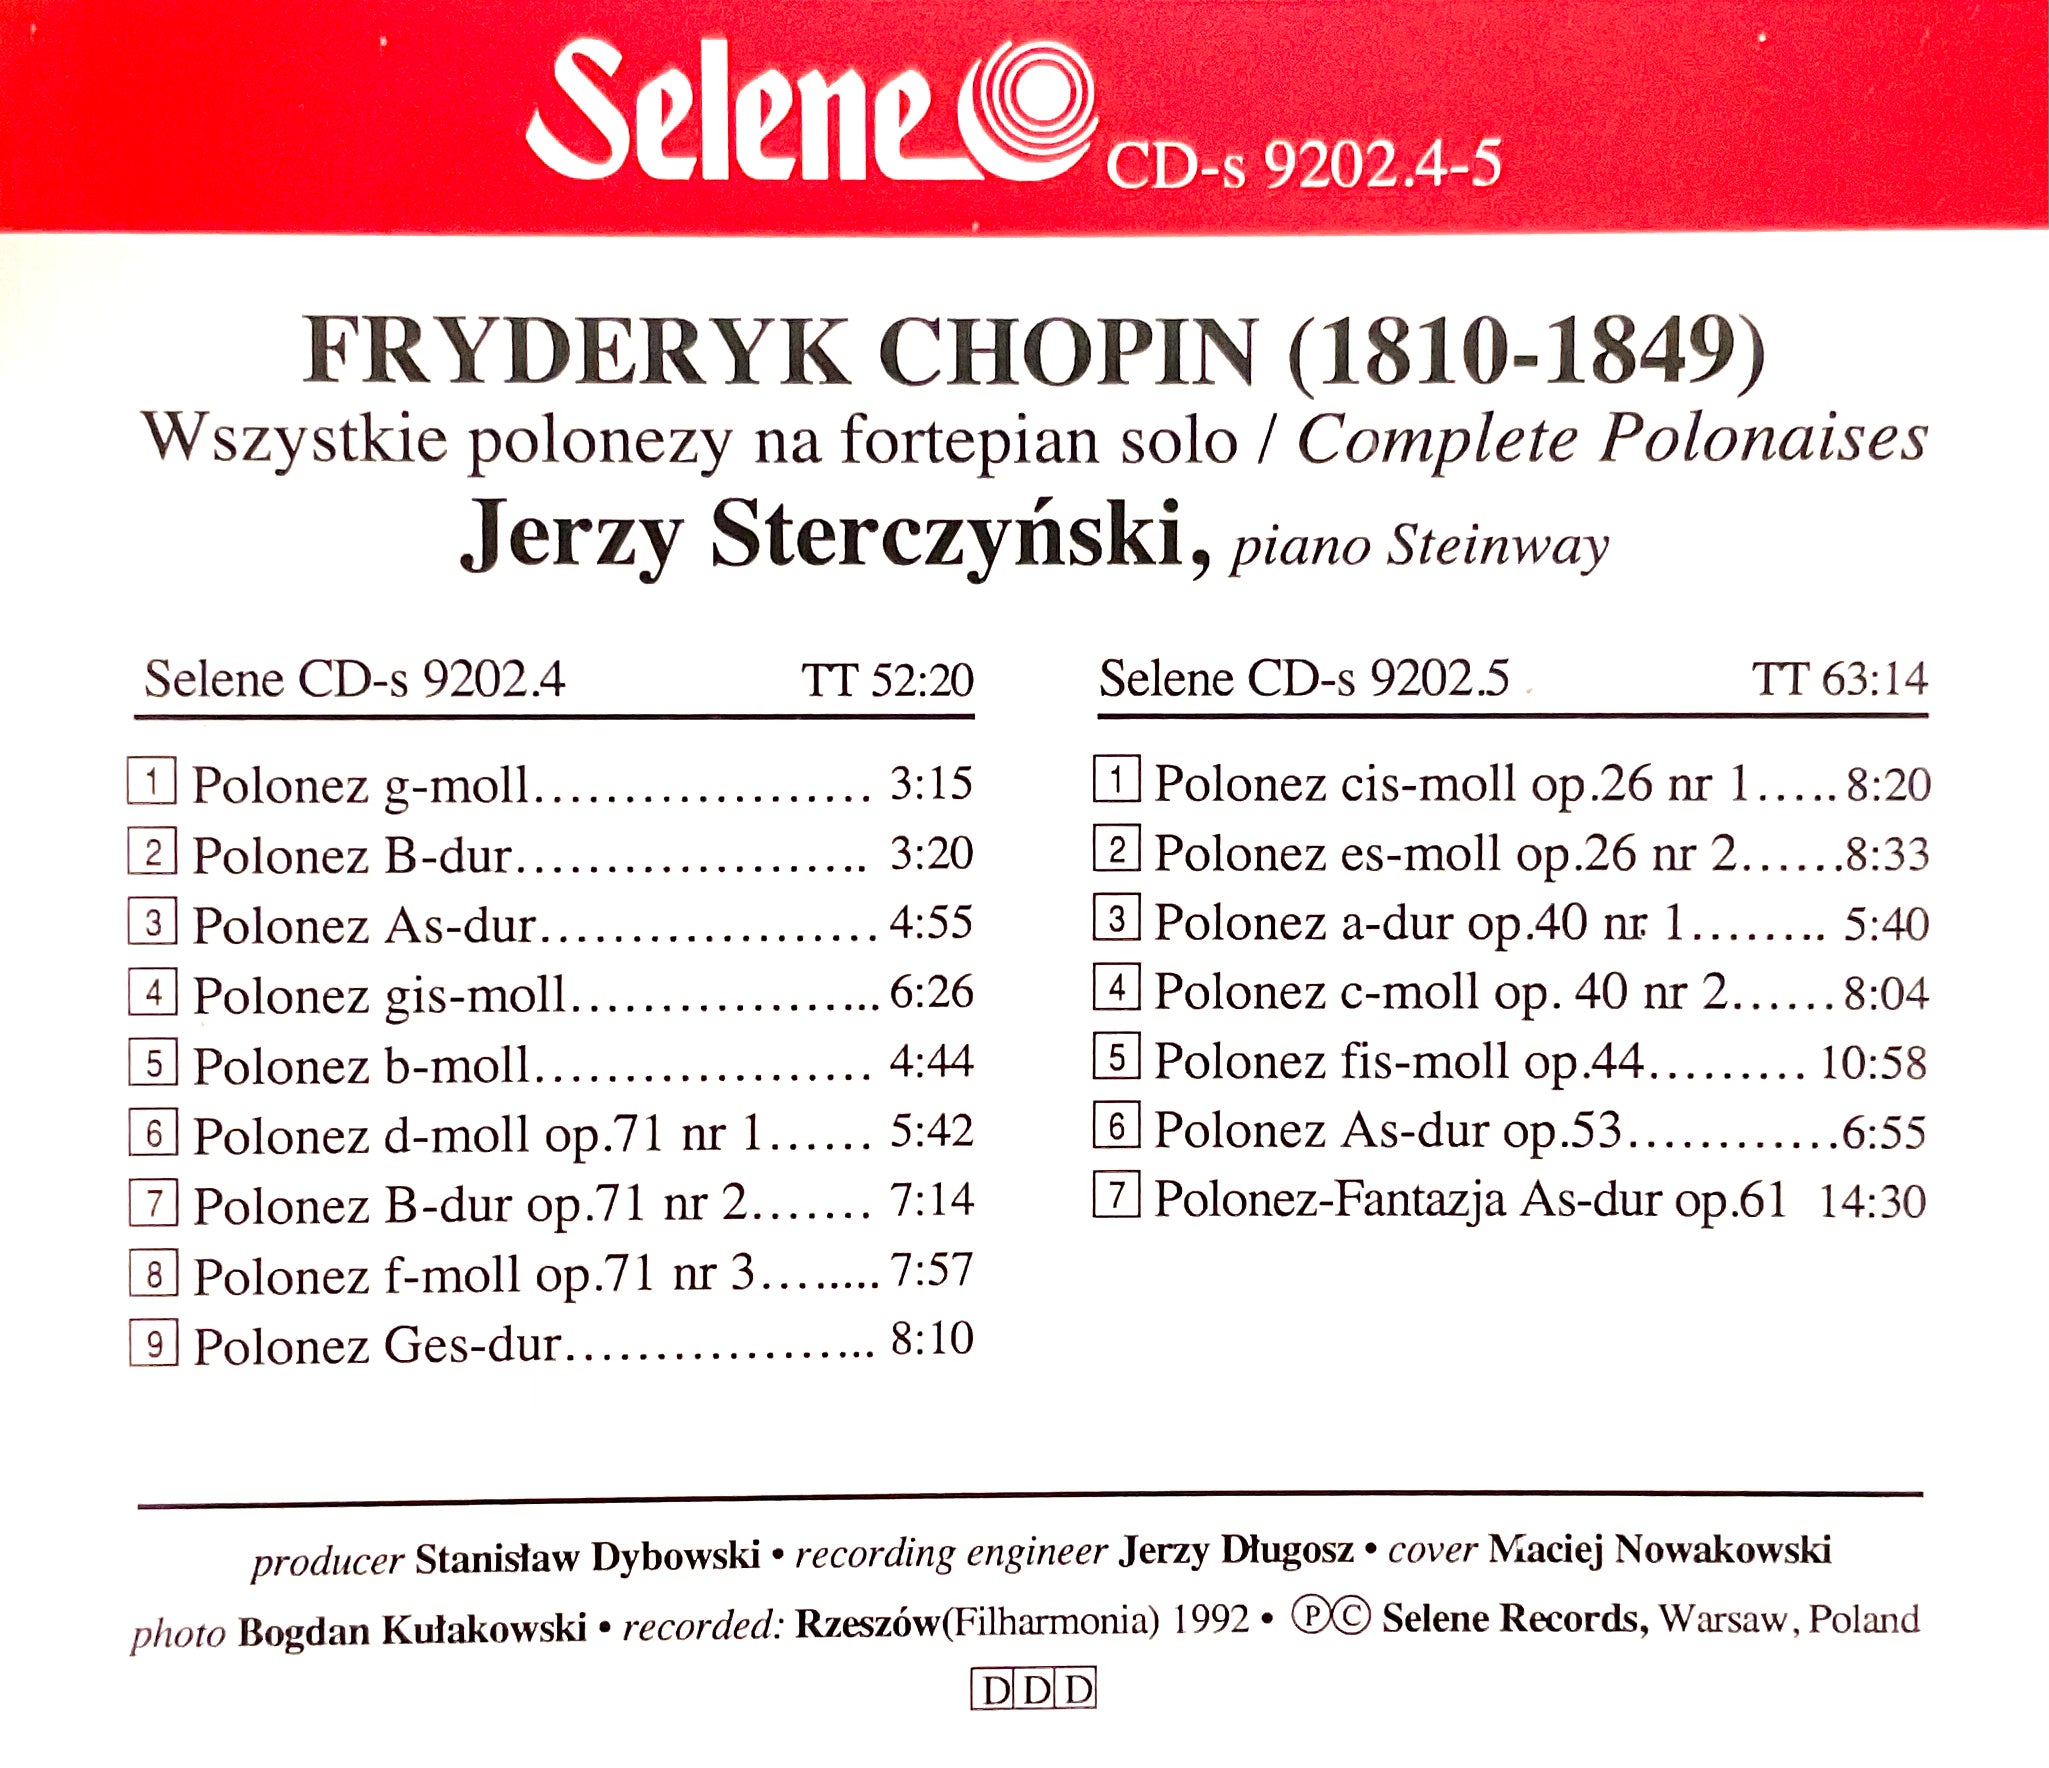 Jerzy Sterczynski - Polonaises 2 cds